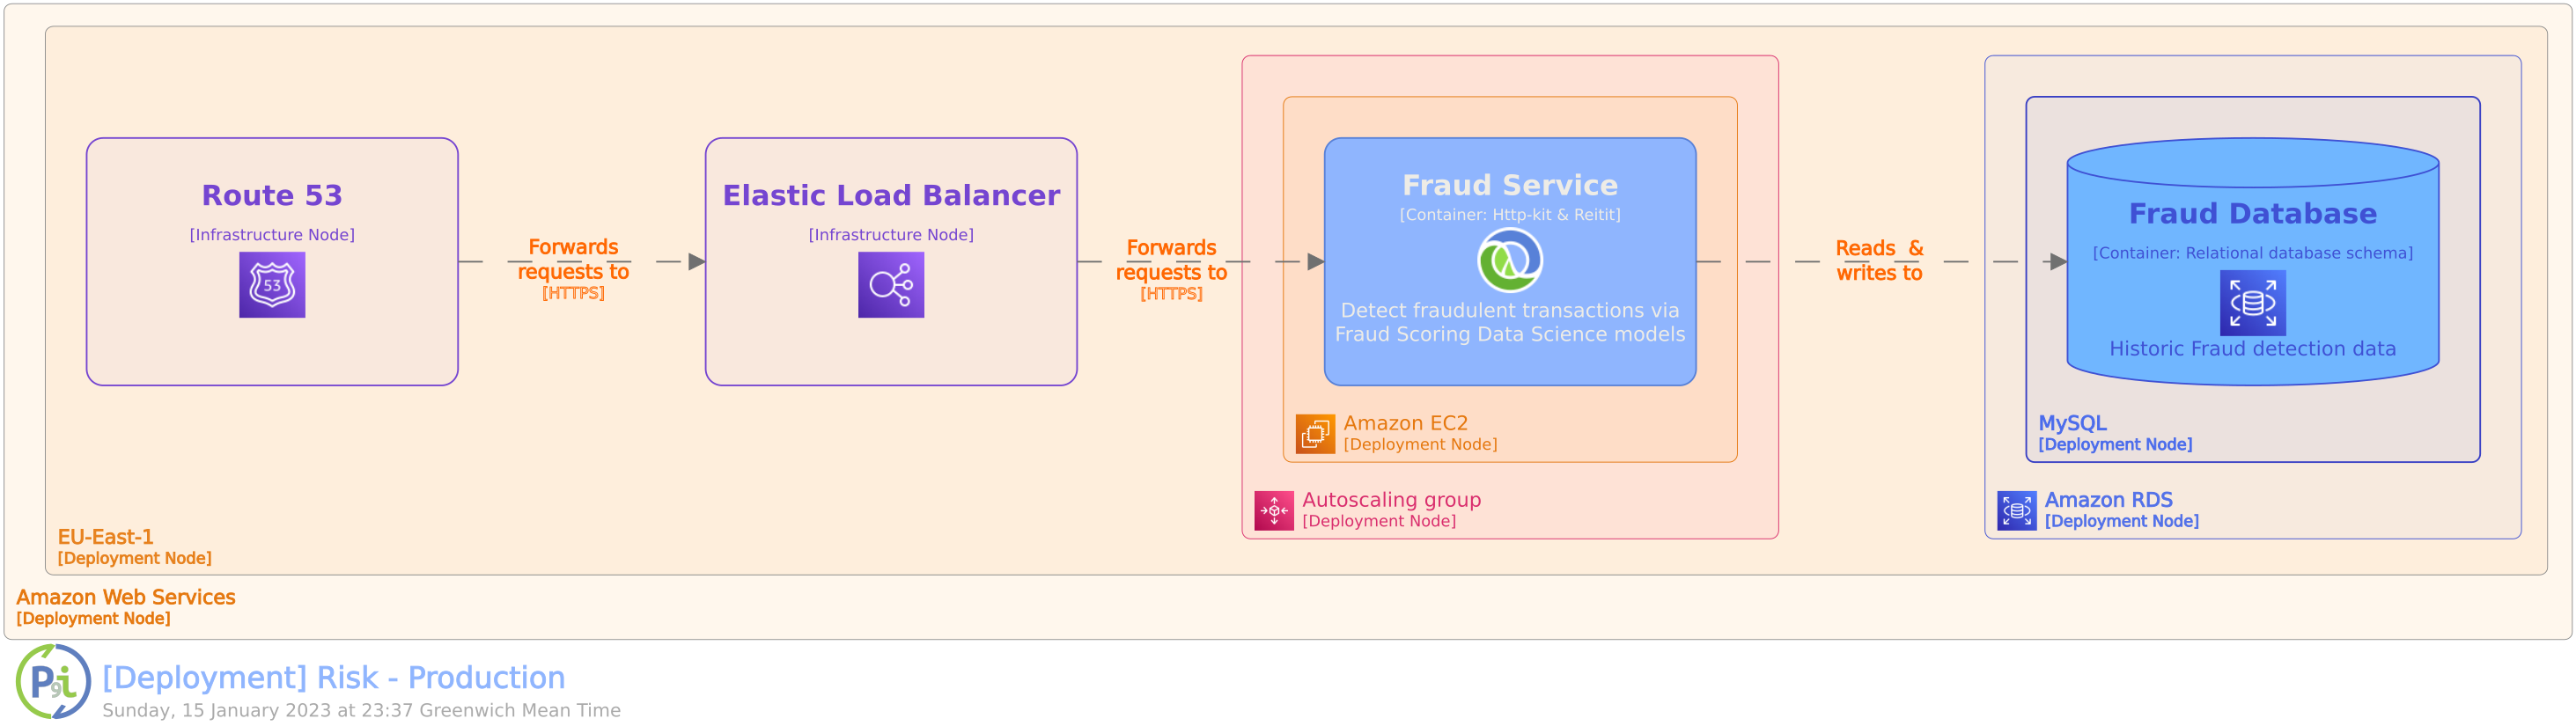 Mock Fintech Startup - Fraud service deployment view